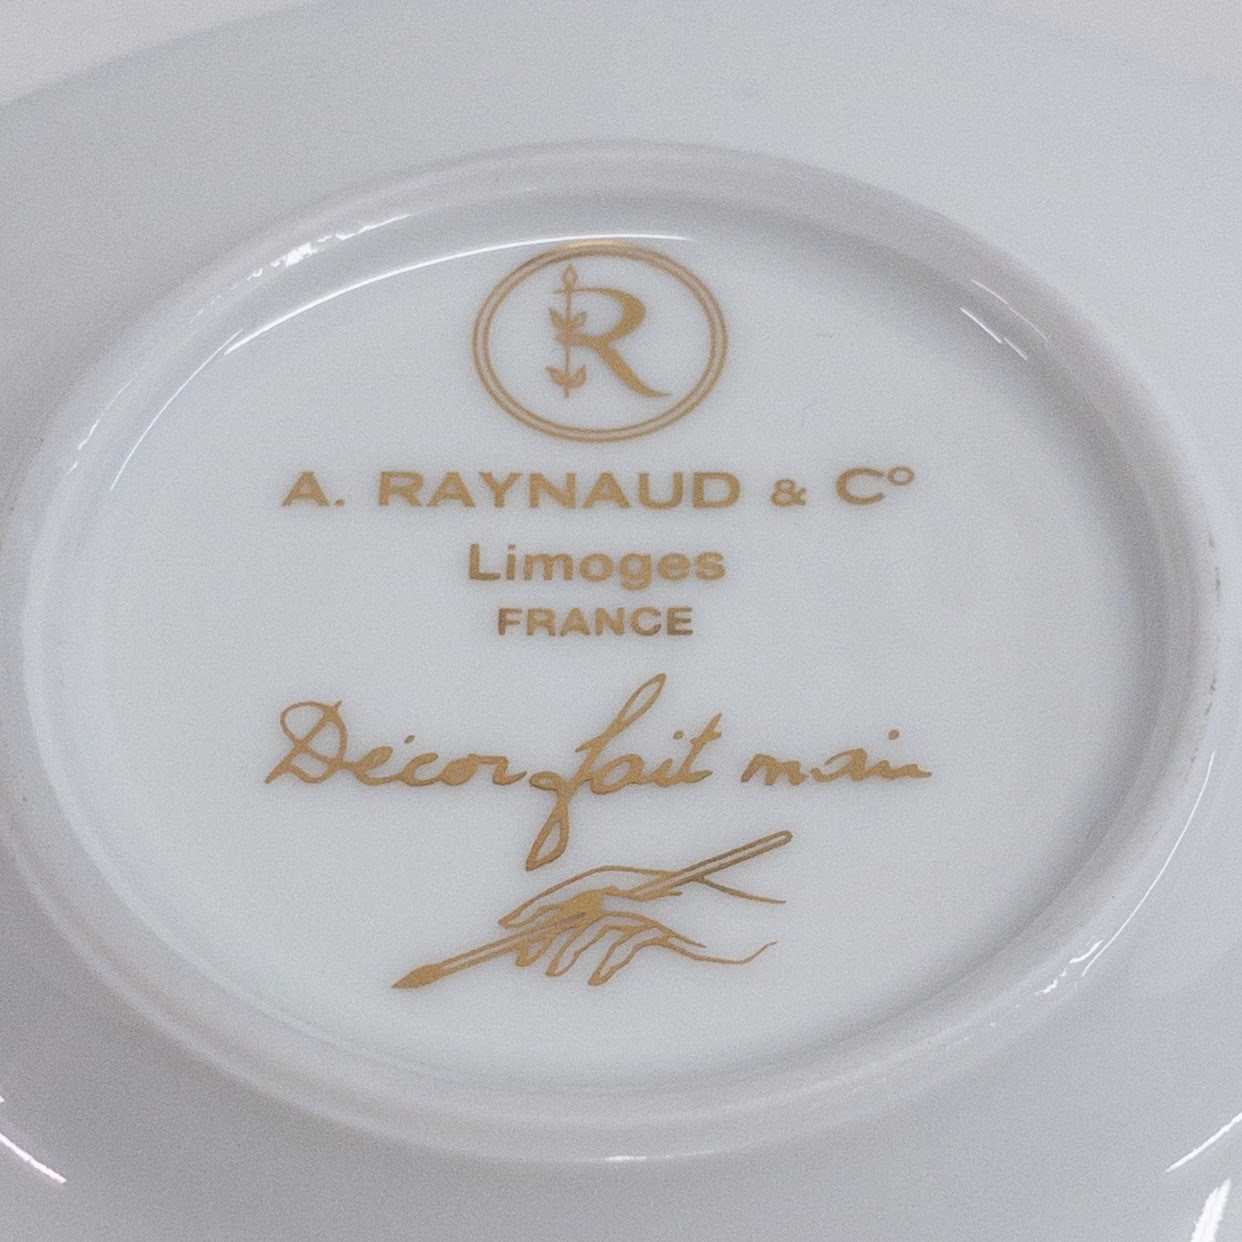 A. Raynaud & Co. Limoges Demitasse Set 1